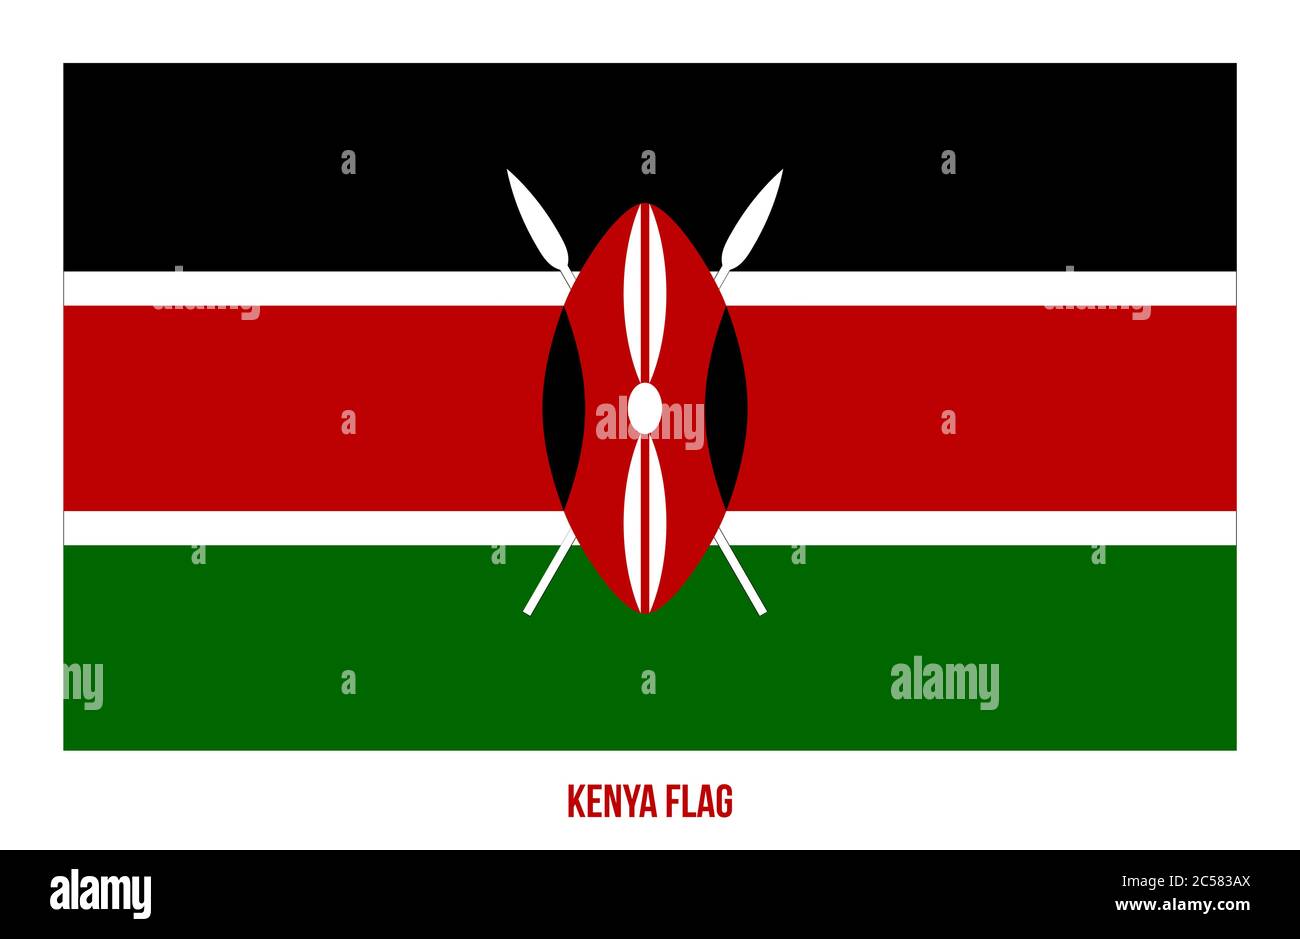 Kenya Flag Vector Illustration on White Background. Kenya National Flag. Stock Vector